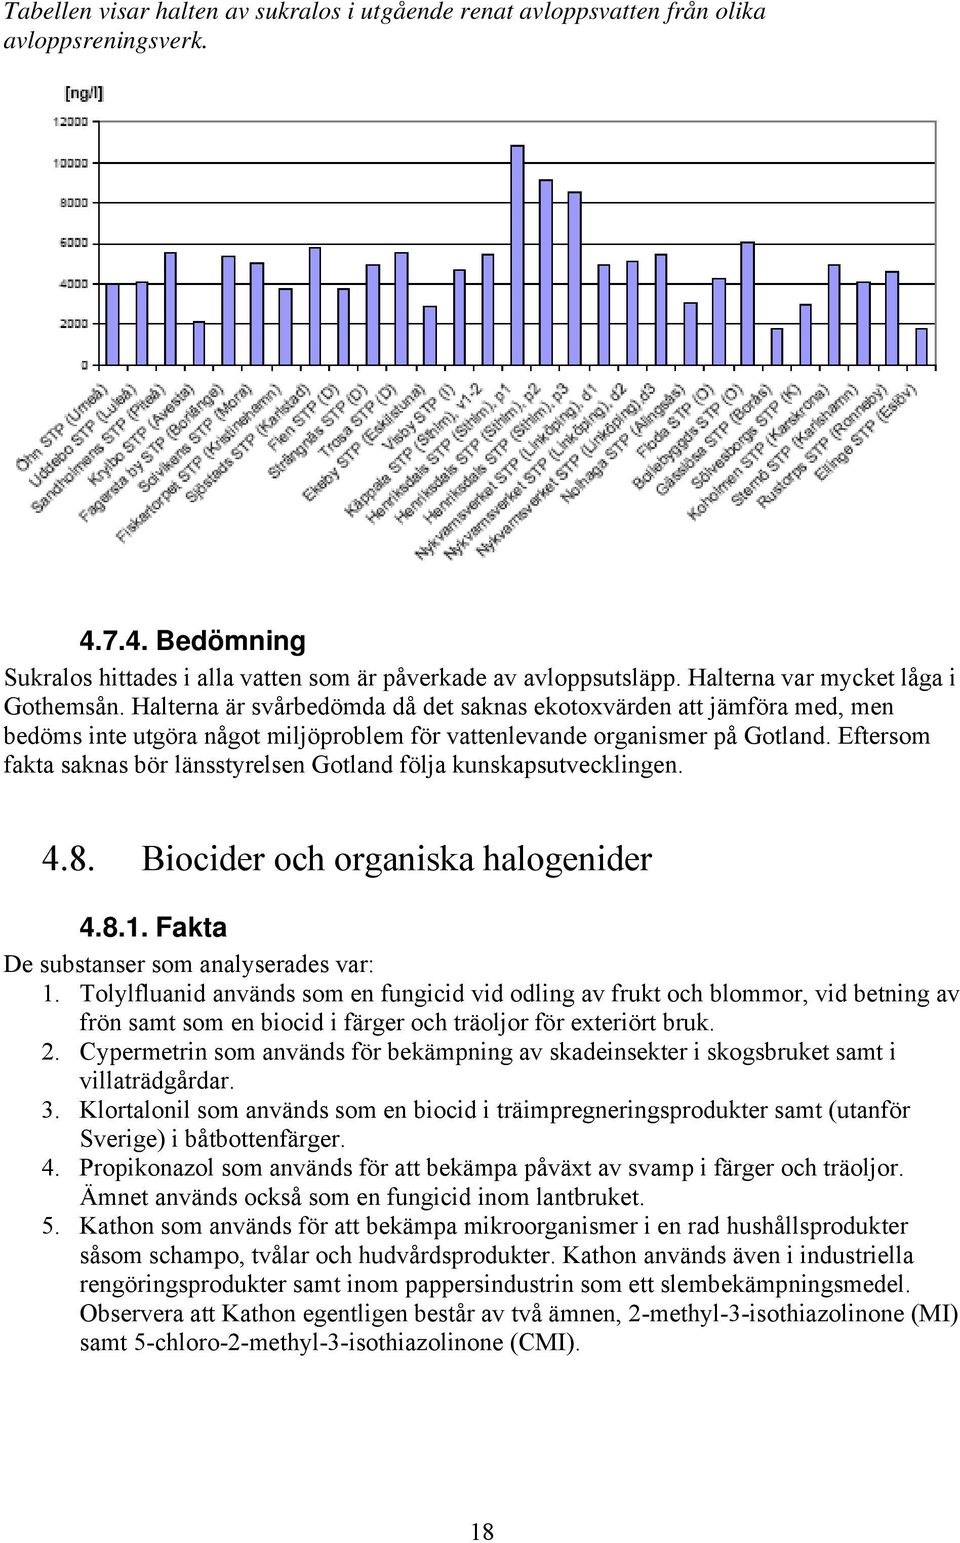 Eftersom fakta saknas bör länsstyrelsen Gotland följa kunskapsutvecklingen. 4.8. Biocider och organiska halogenider 4.8.1. Fakta De substanser som analyserades var: 1.